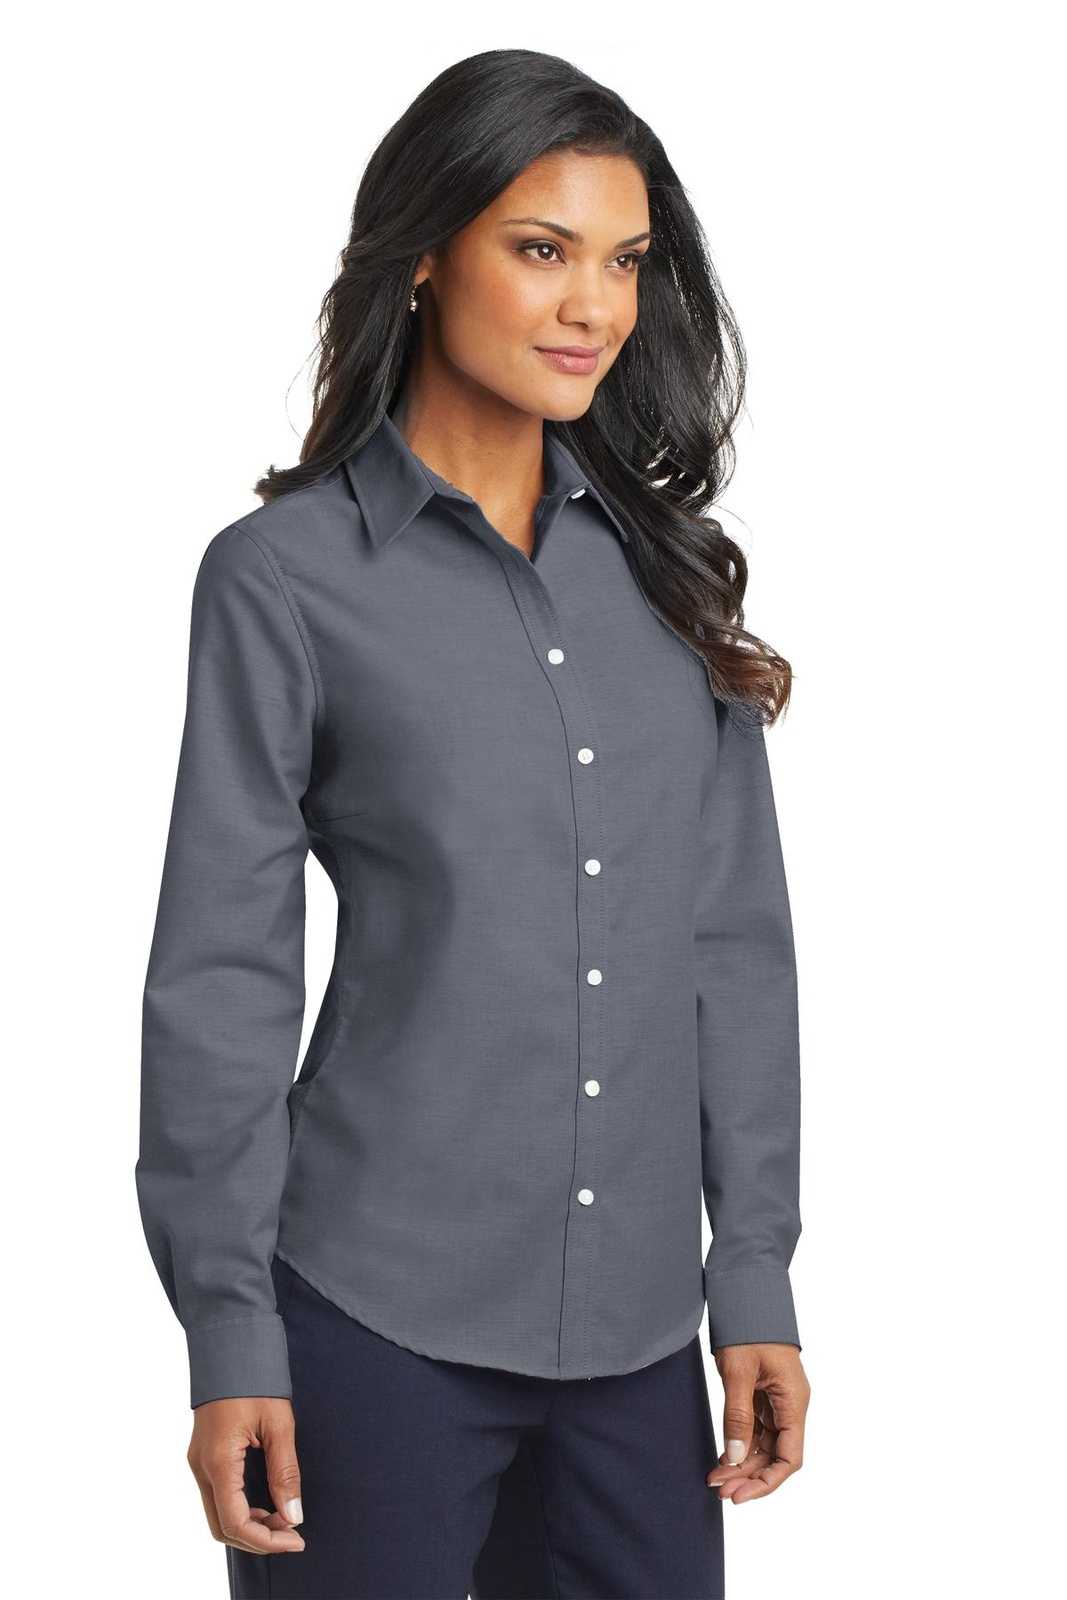 Port Authority L658 Ladies Superpro Oxford Shirt - Black - HIT a Double - 4